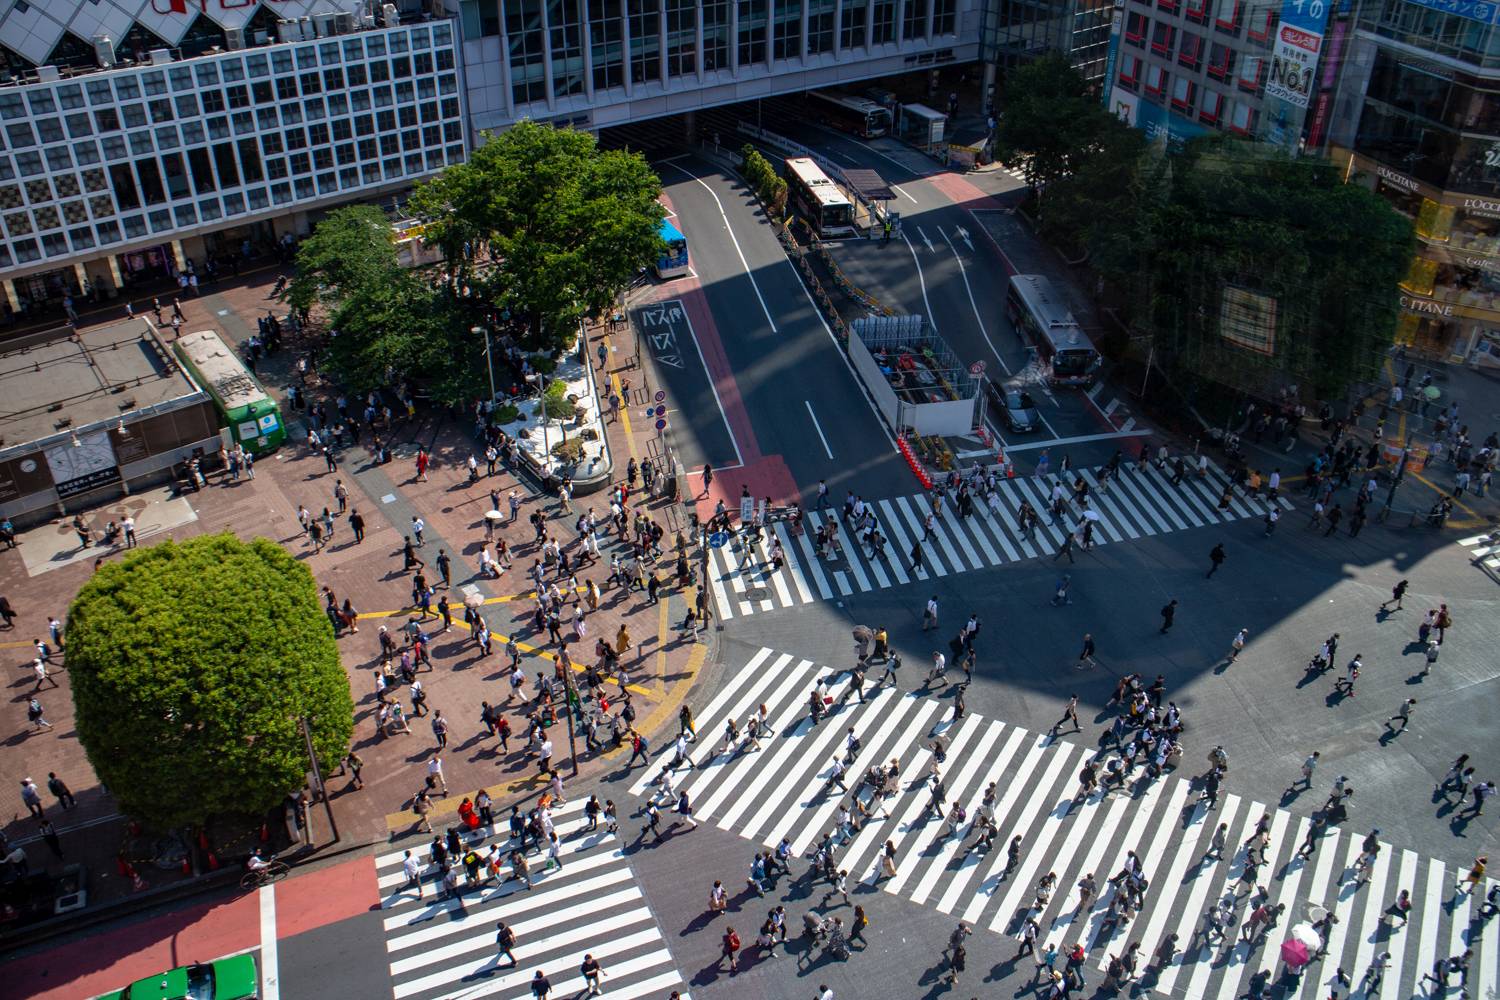 Die Shibuya-Kreuzung. Die Bäume am oberen Bildrand markieren Hachiko.